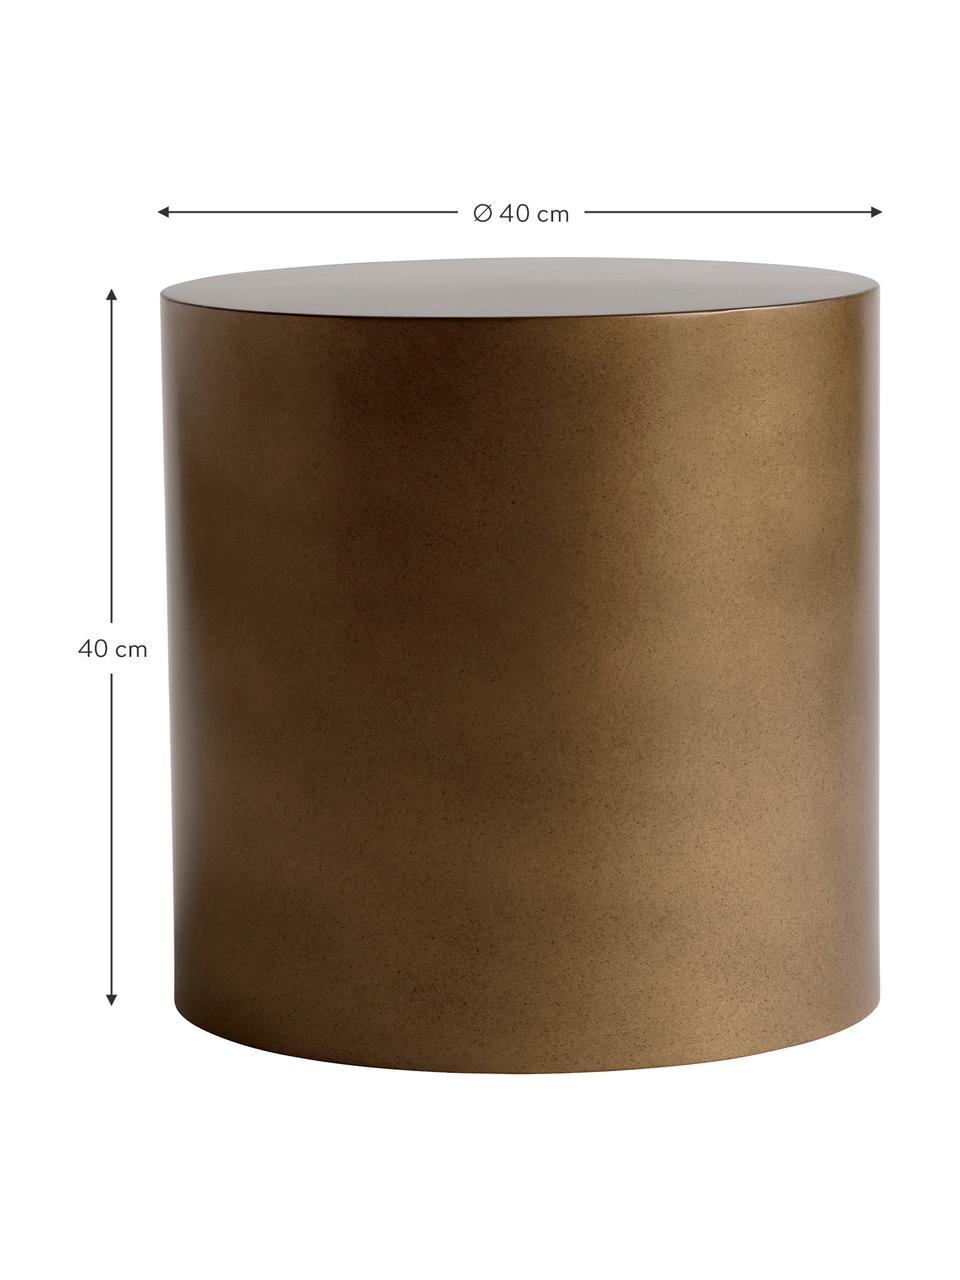 Runder Metall-Beistelltisch Metdrum in Honigfarben, Metall, Honigfarben, Ø 40 x H 40 cm